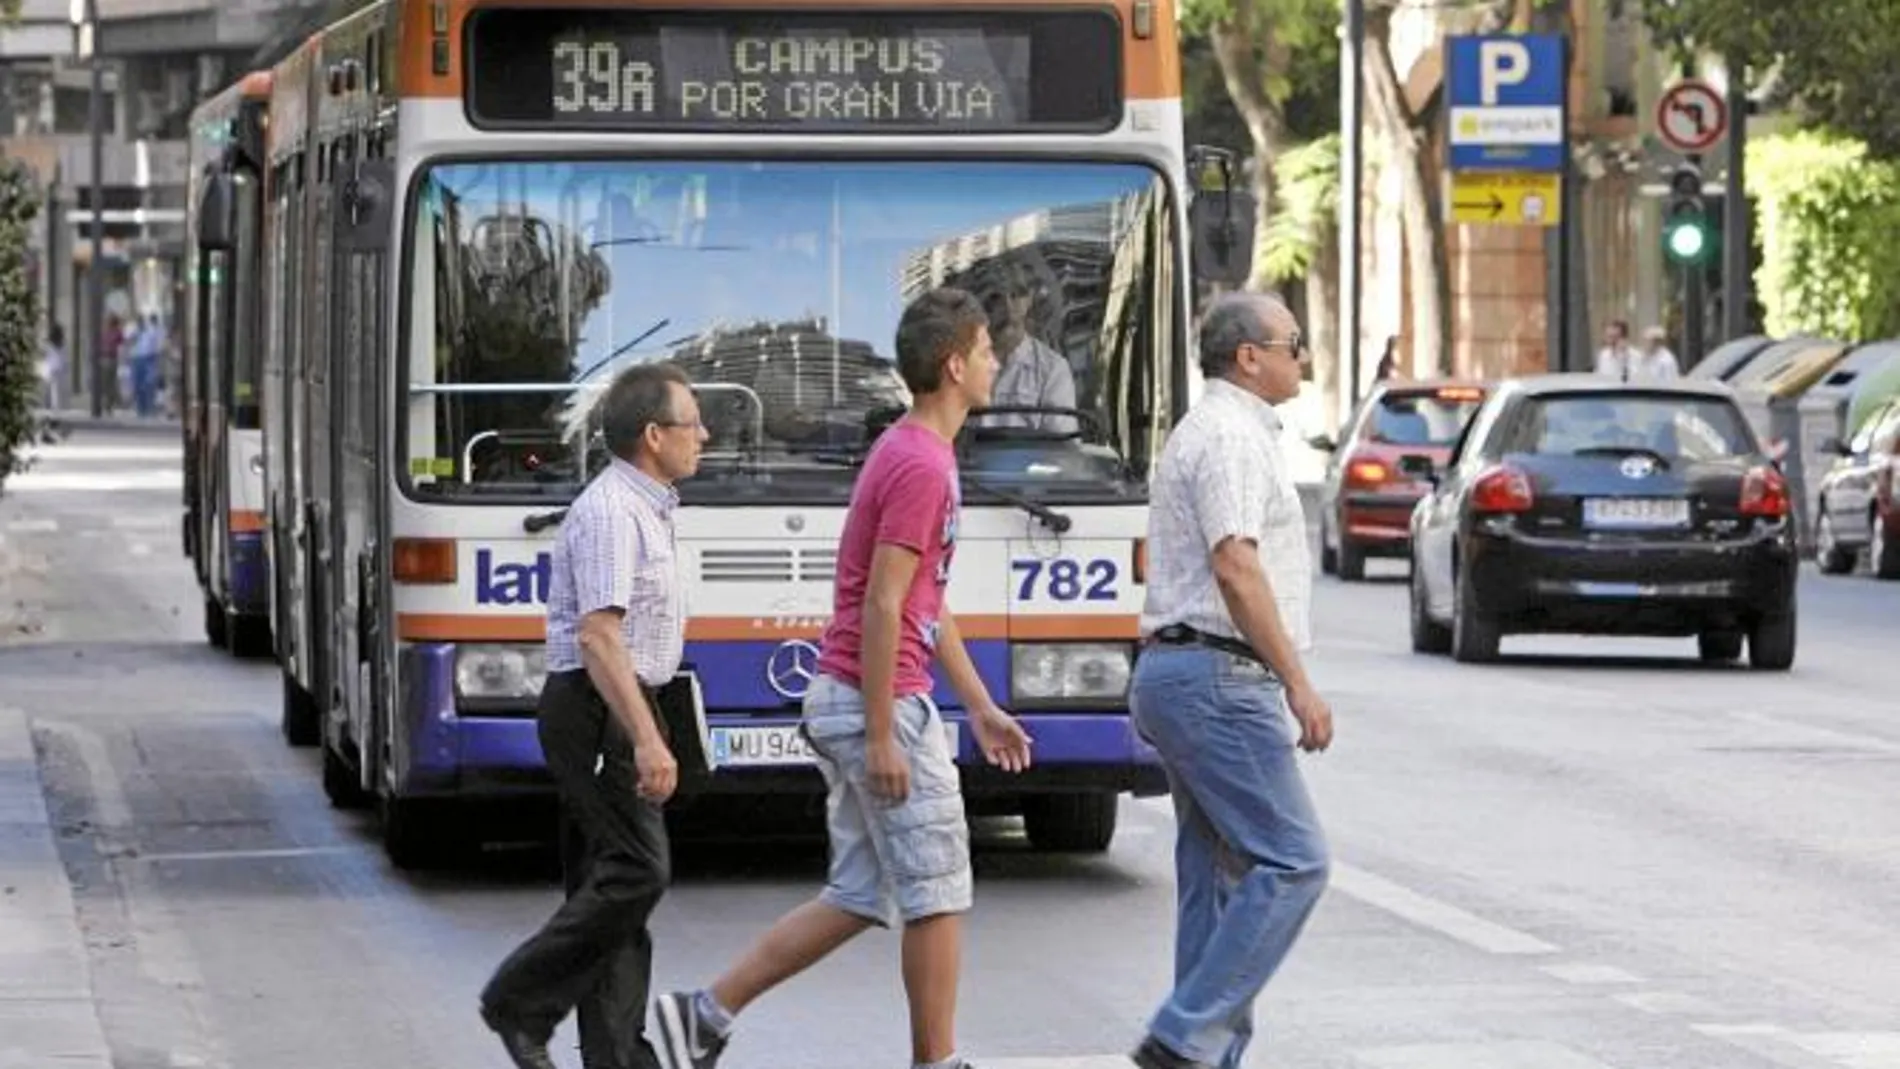 Los pensionistas y miembros de familias numerosas especiales deberán pagar por coger la línea de autobús de la imagen si no lo evitan los concejales Iniesta y Fuentes